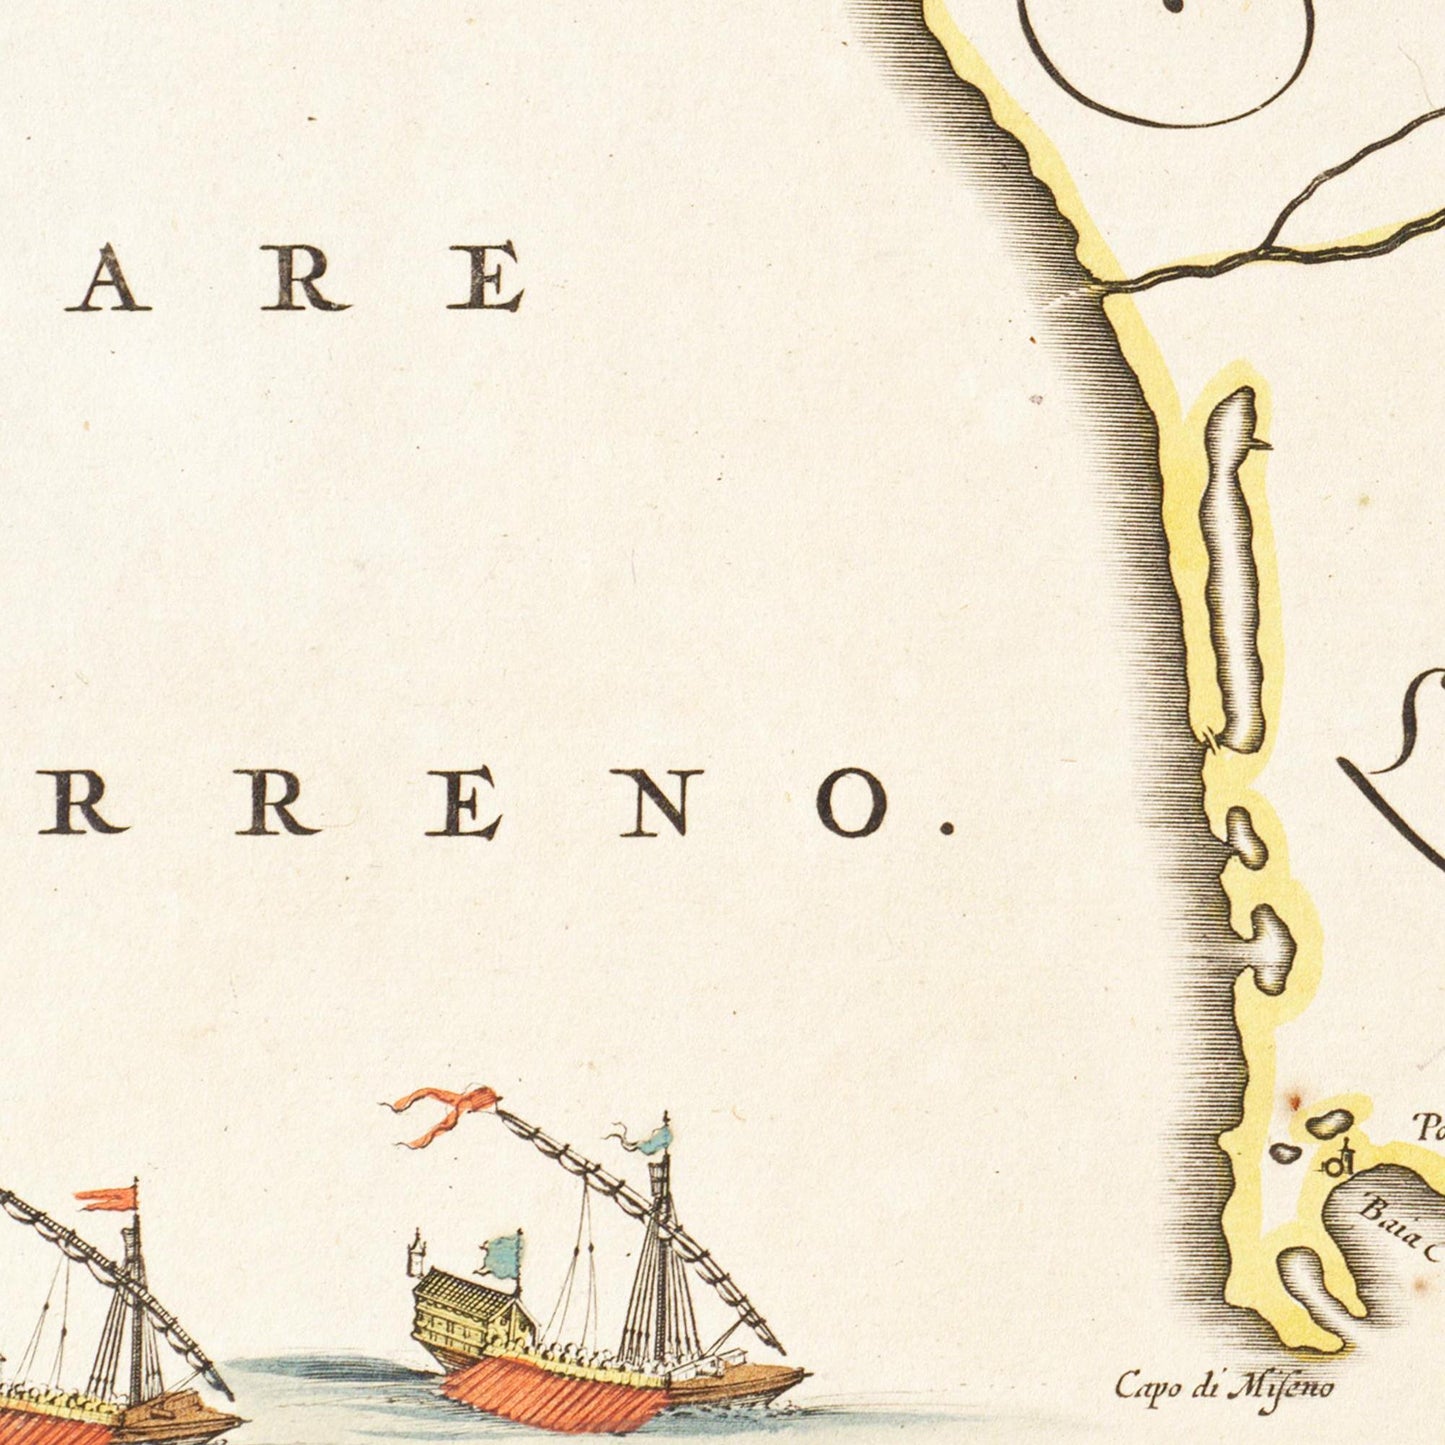 Historische Landkarte Molise um 1630